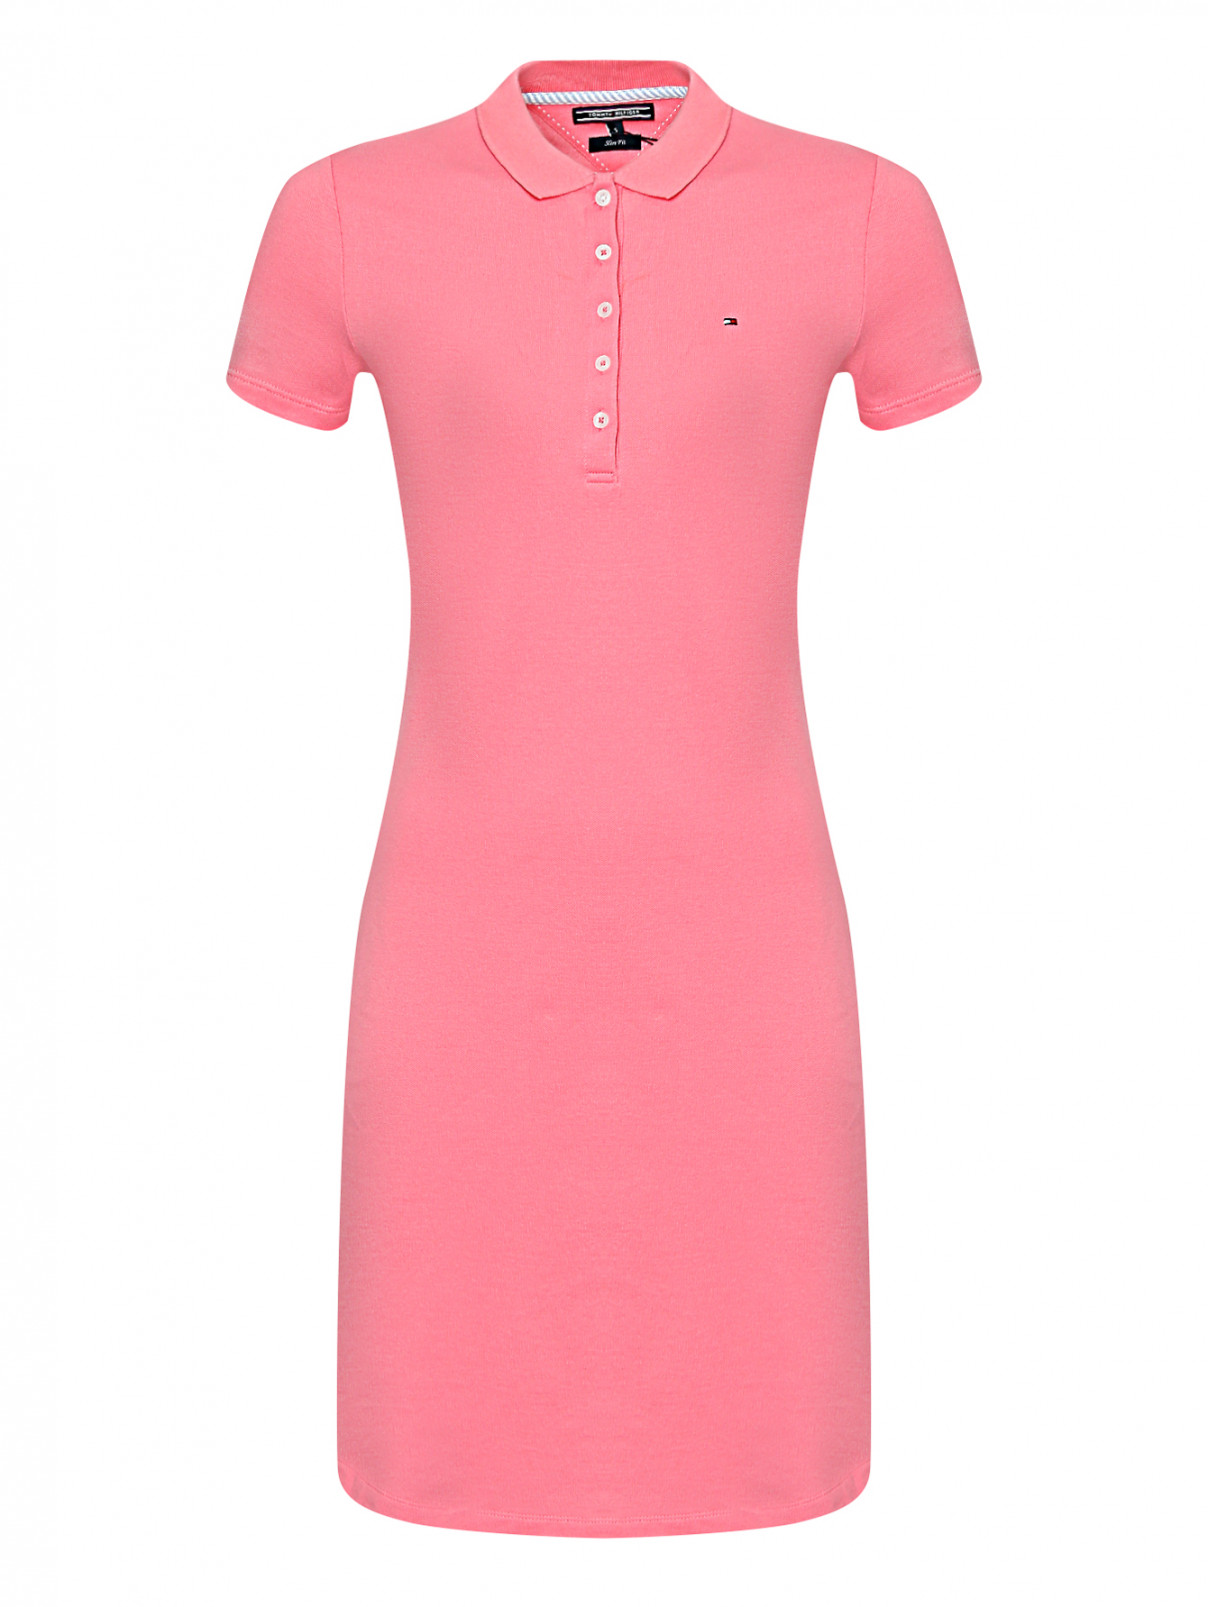 Трикотажное платье из хлопка с короткими рукавами Tommy Hilfiger  –  Общий вид  – Цвет:  Розовый